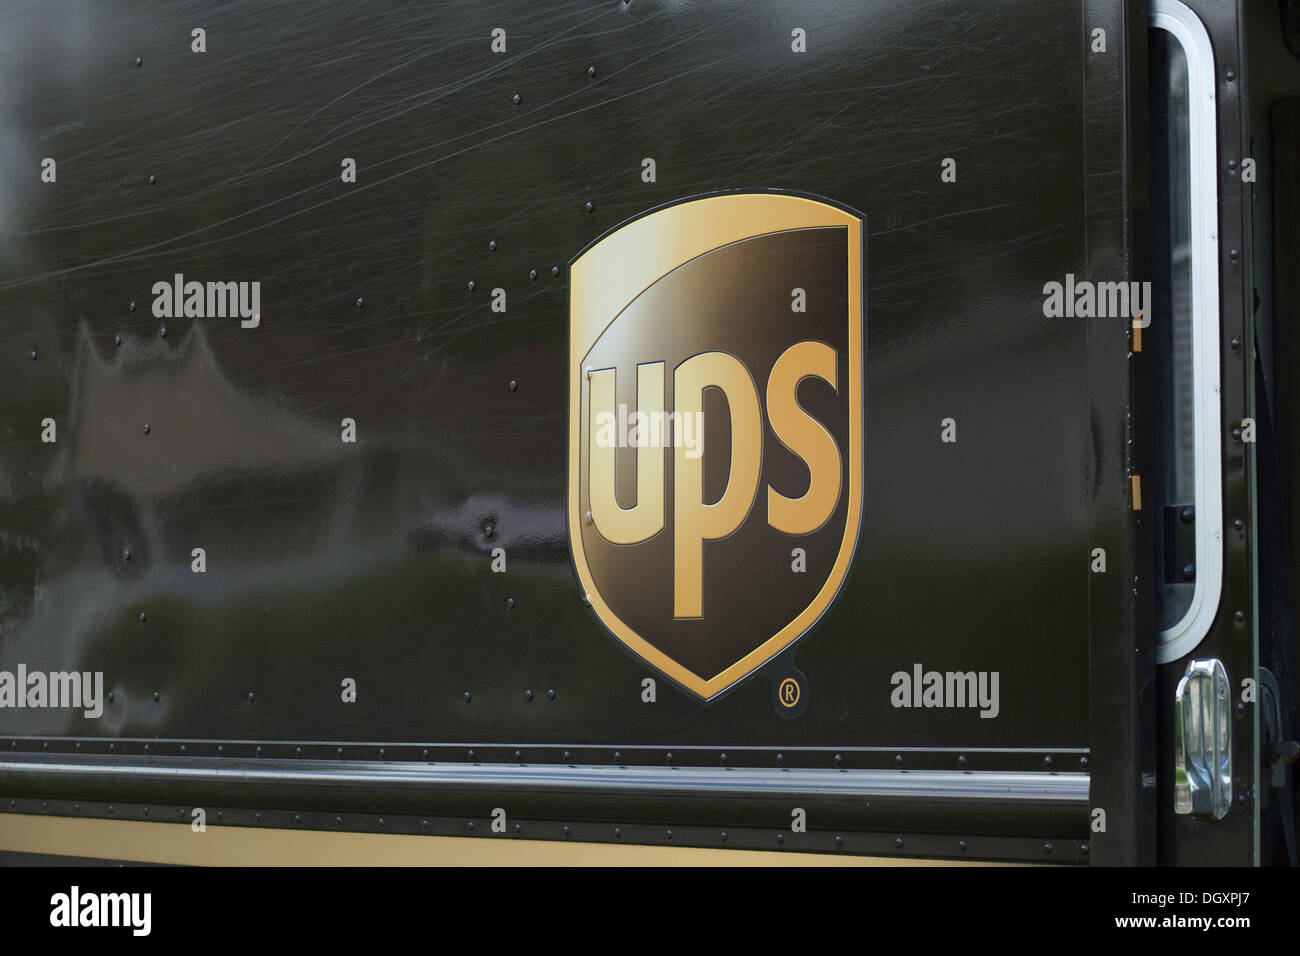 Seite des UPS (United Parcel Service) LKW mit Firmenlogo. Stockfoto